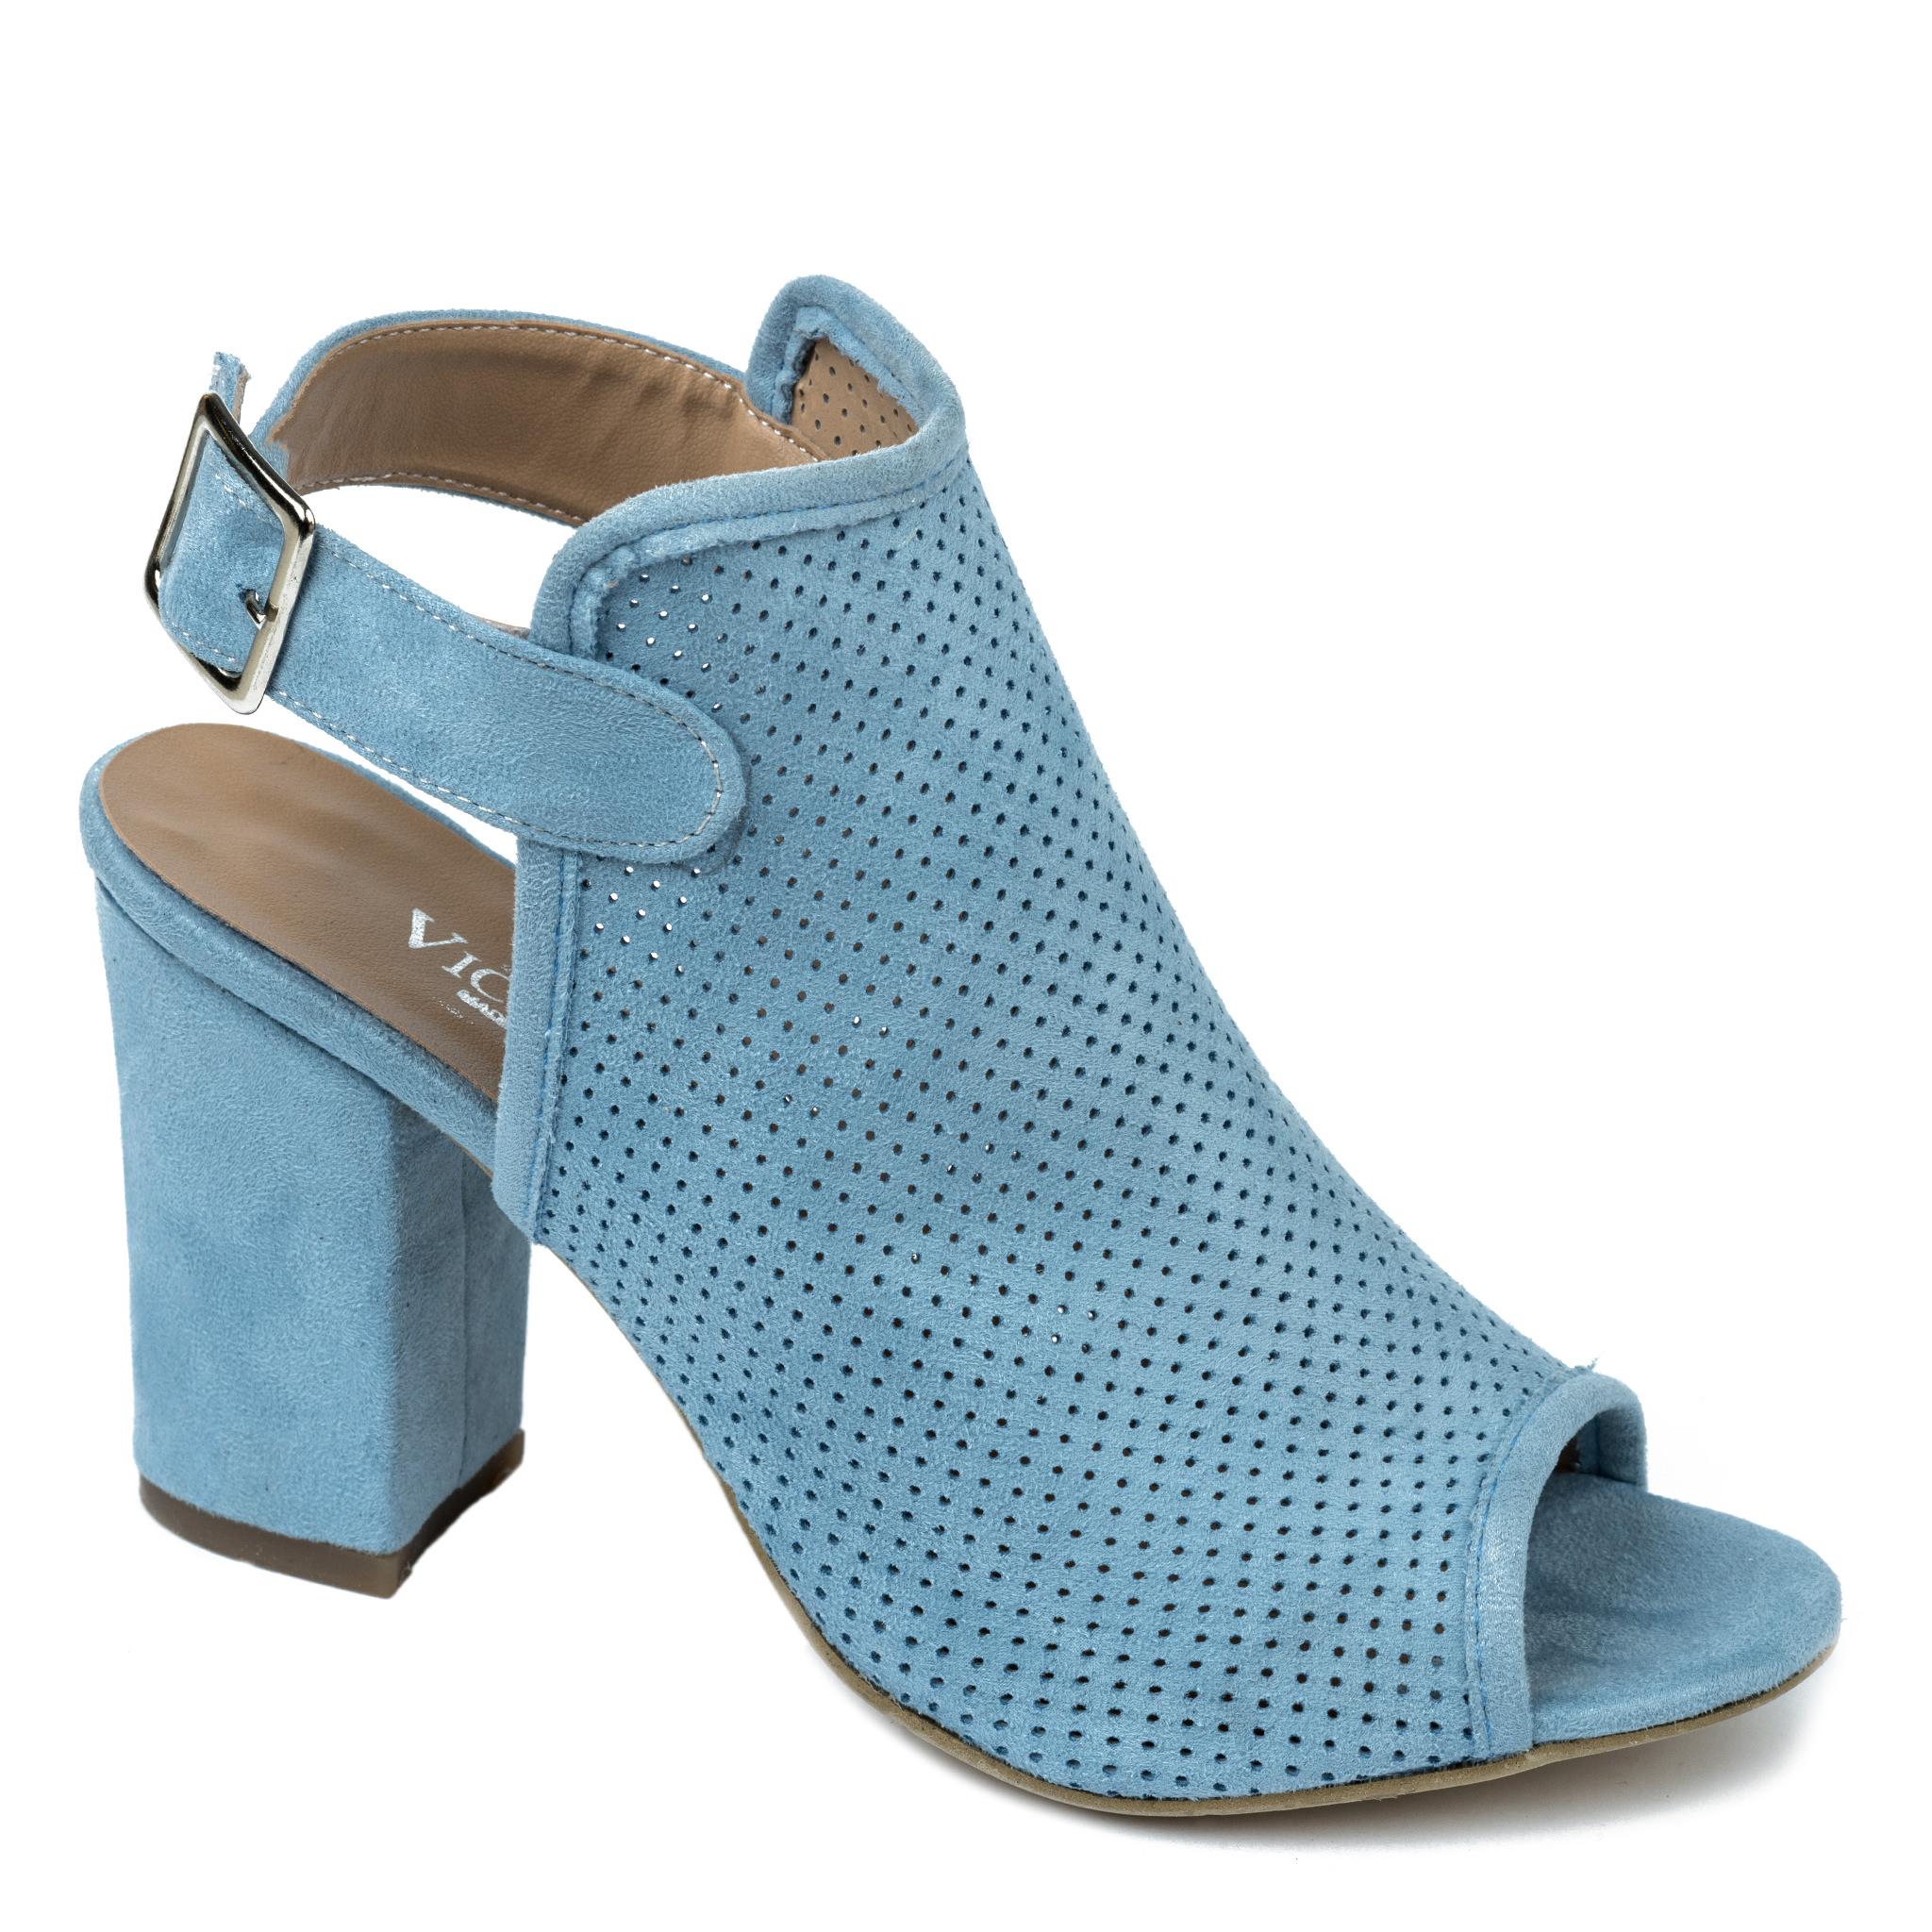 Women sandals A529 - BLUE